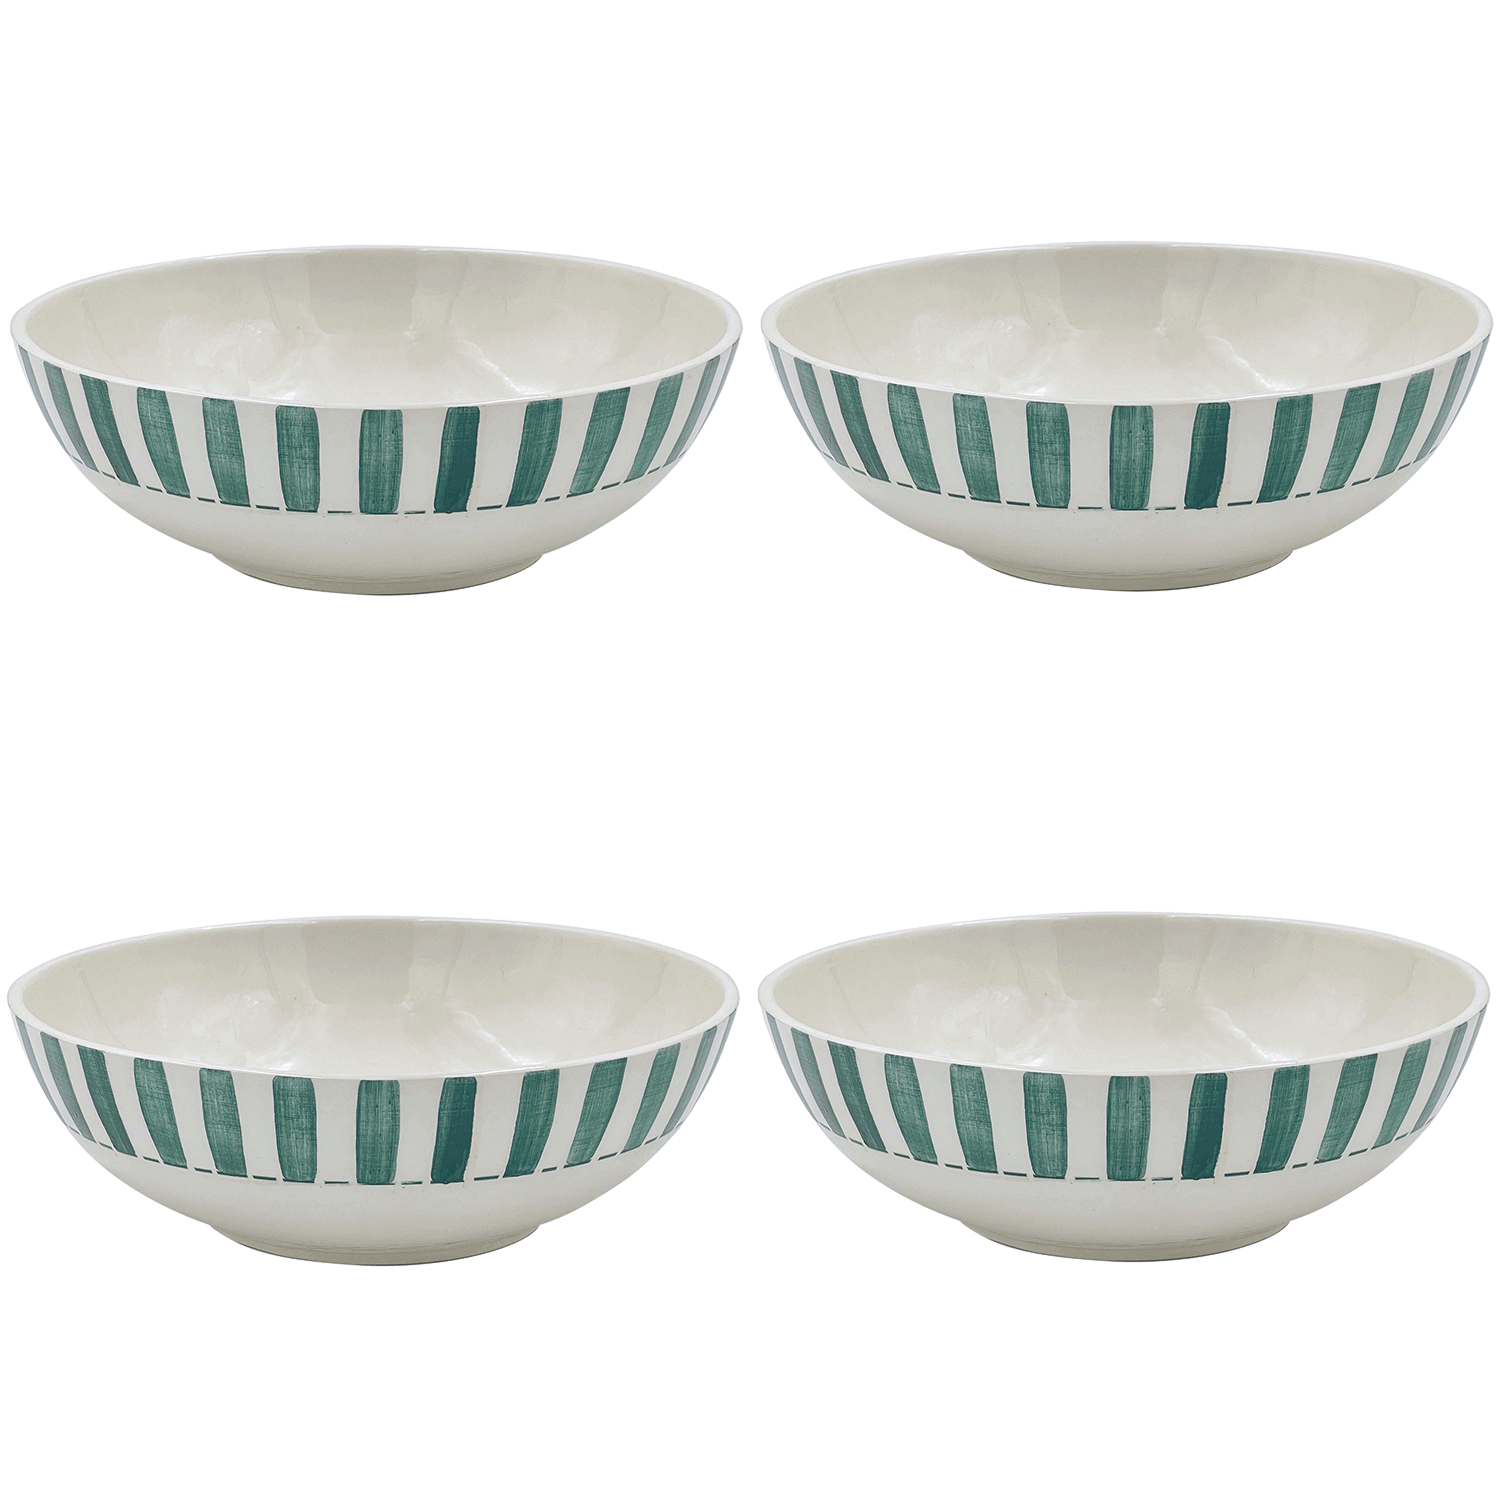 Large Green Stripes Bowls (Set of 4)